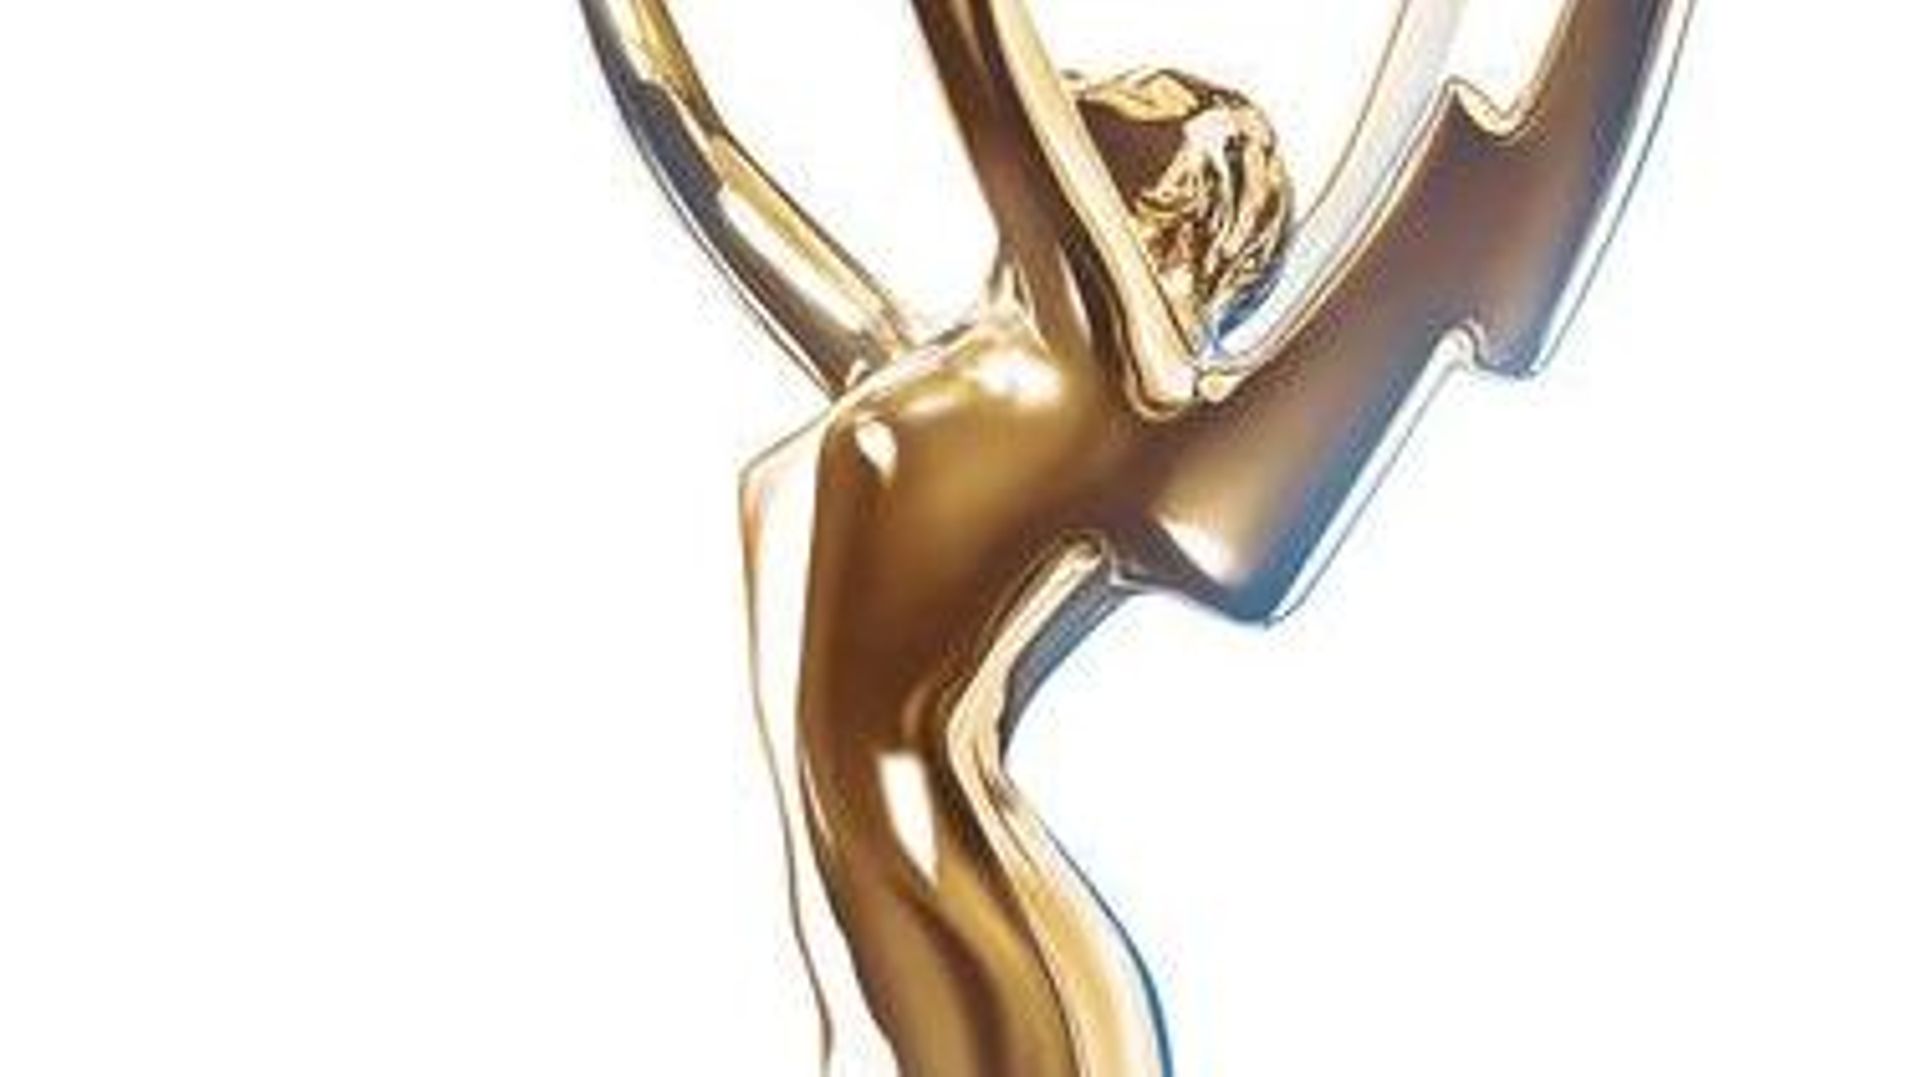 Les Emmy Awards 2014 avancés au mois d'août